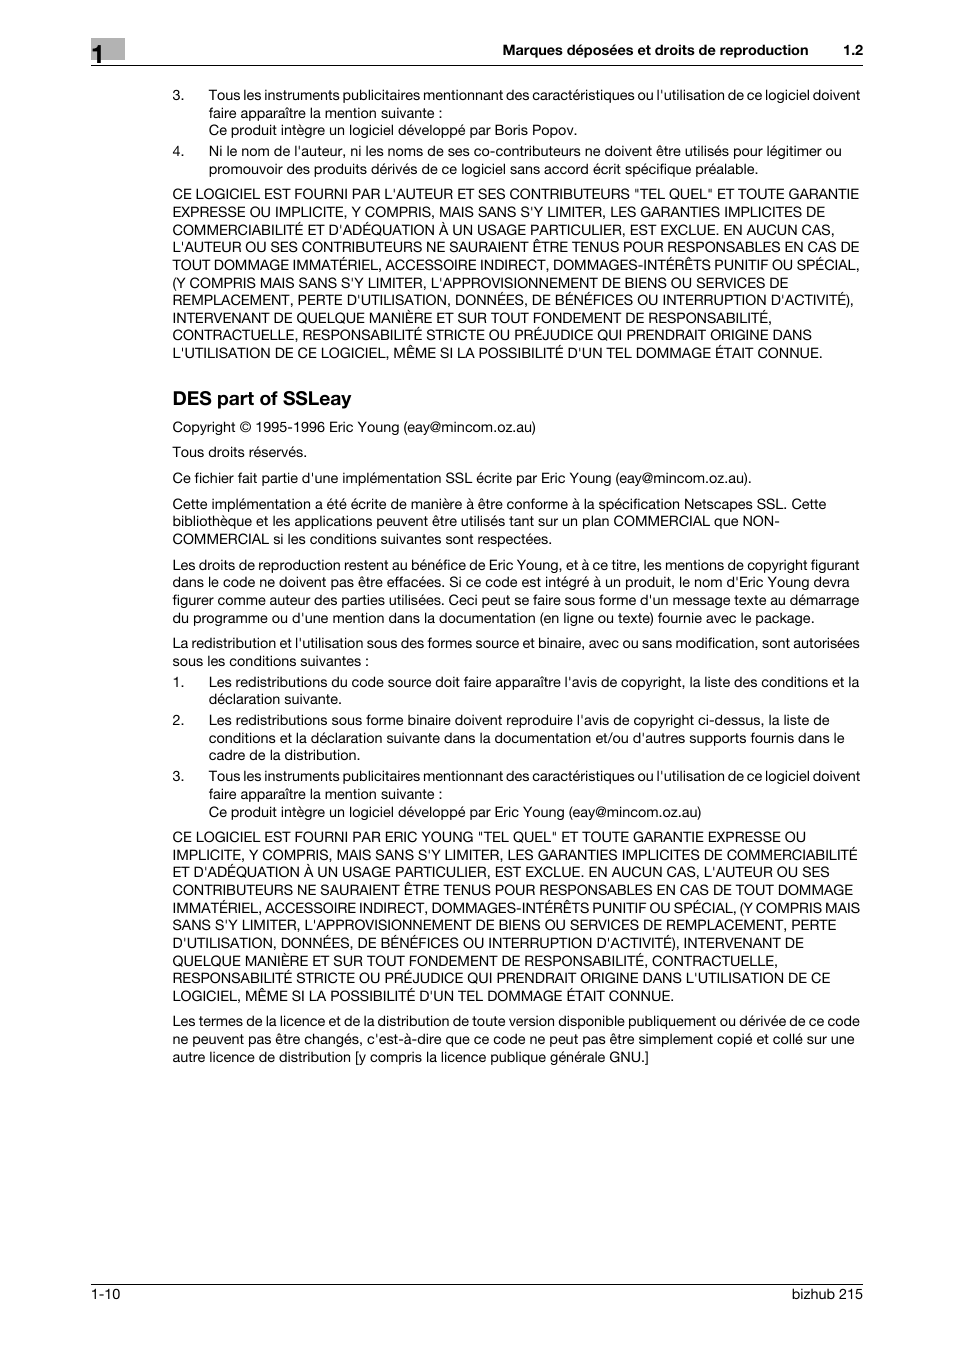 Des part of ssleay, Des part of ssleay -10 | Konica Minolta Bizhub 215 Manuel d'utilisation | Page 16 / 126